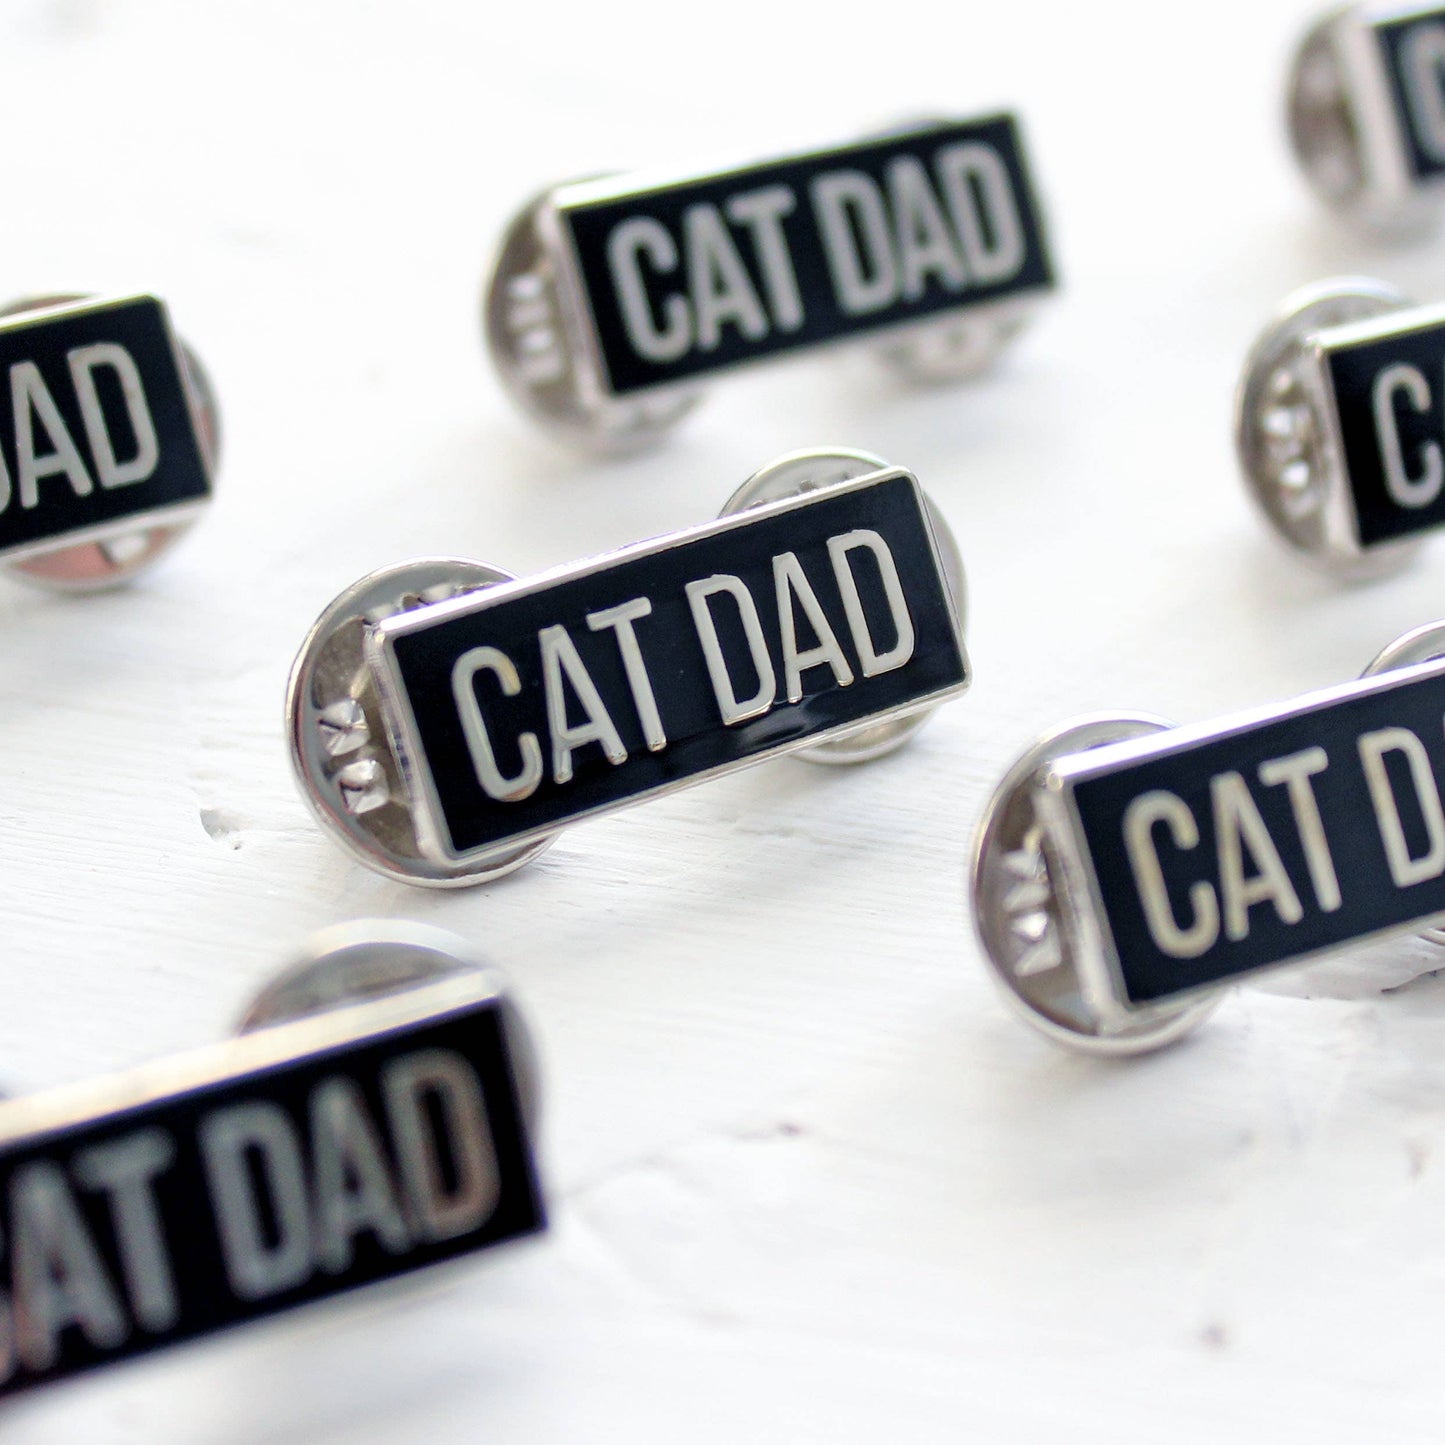 Cat Dad Enamel Pin Badge